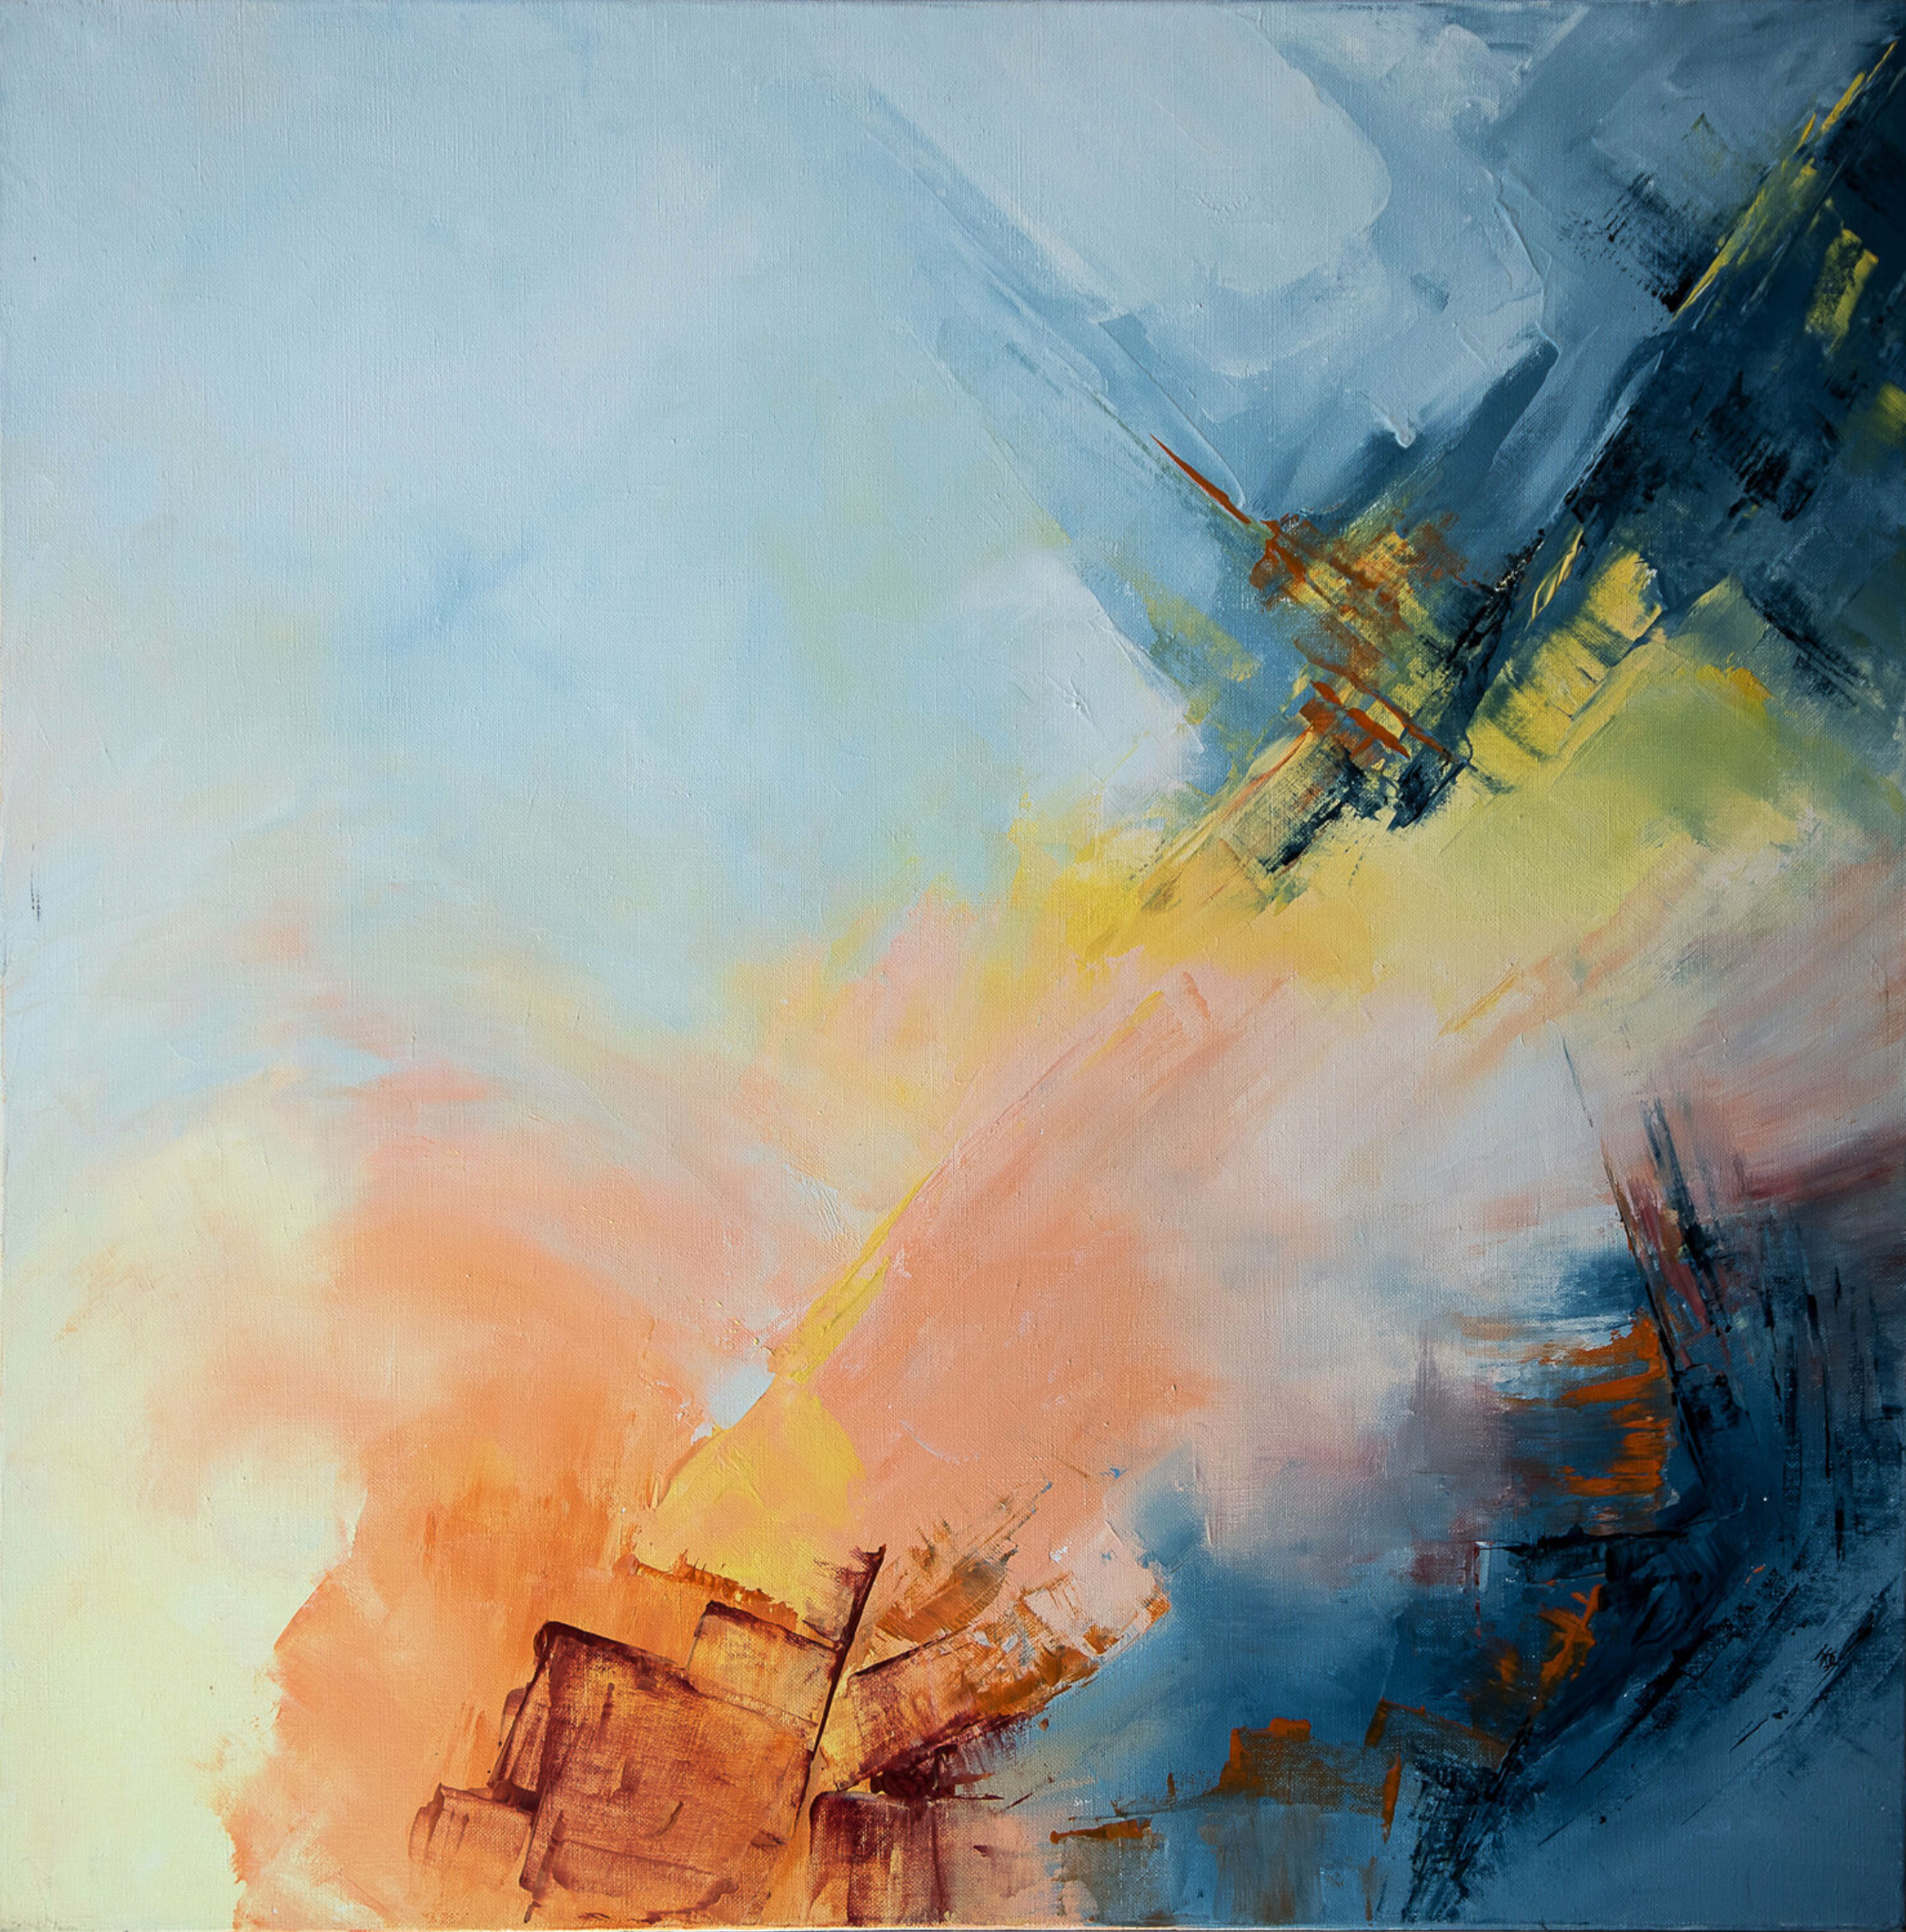 La pintura abstracta "Un jour une vie" de Françoise Dugourd-Caput muestra las etapas visualizadas a través de las zonas de diferentes colores que pueden evocar el comienzo de una vida y el viaje hacia su final.